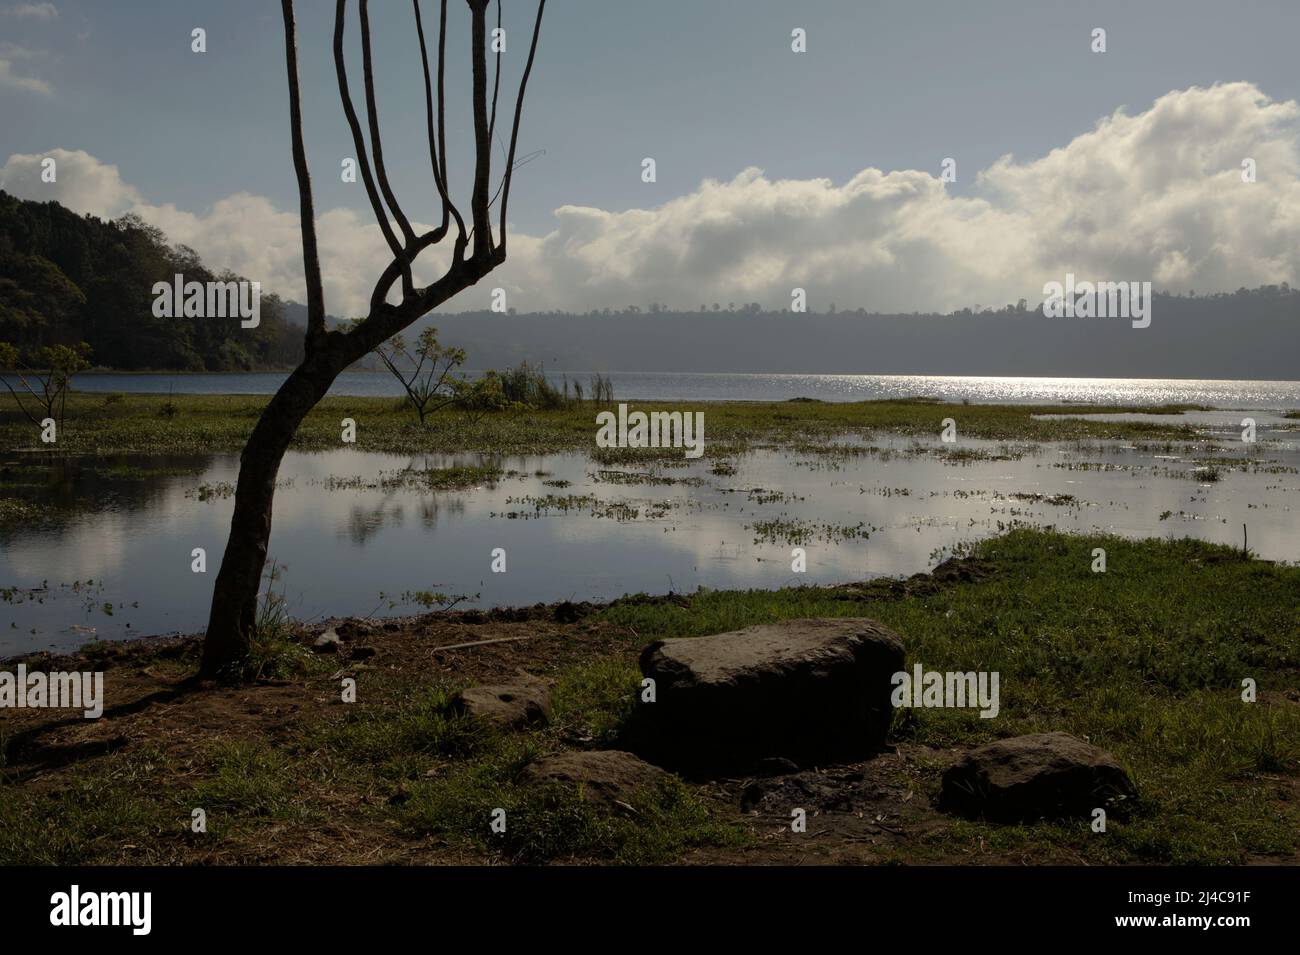 Lac Buyan à Bueleng, Bali, Indonésie. Les dommages causés à l'écosystème forestier ont causé le rétrécissement des lacs Buyan et Tamblingan qui soutiennent de nombreux villages de la régence de Bueleng, à Bali. Un chef de communauté traditionnel a déclaré que le niveau d'eau des deux lacs n'avait pas augmenté, même en saison des pluies, comme l'a cité Kompas.com le 29 juin 2021. Les deux lacs rétrécissent d'environ 100 mètres, ou équivalent à 4 mètres de baisse du niveau d'eau depuis 2000, a déclaré le rapport. Banque D'Images